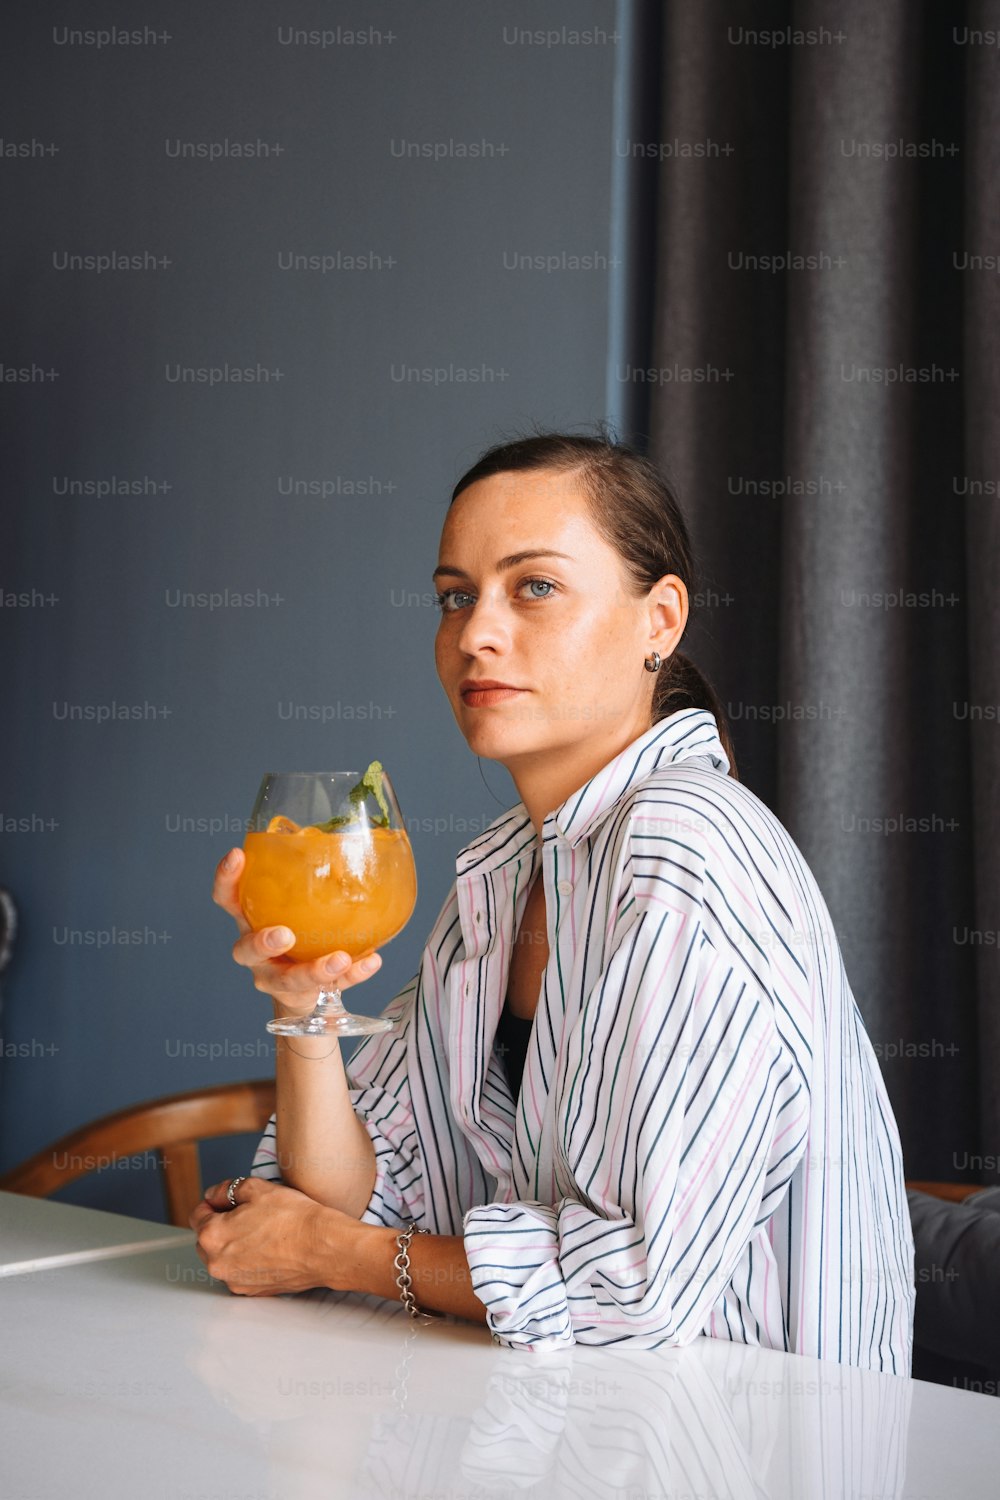 オレンジジュースのグラスを持ってテーブルに座っている女性